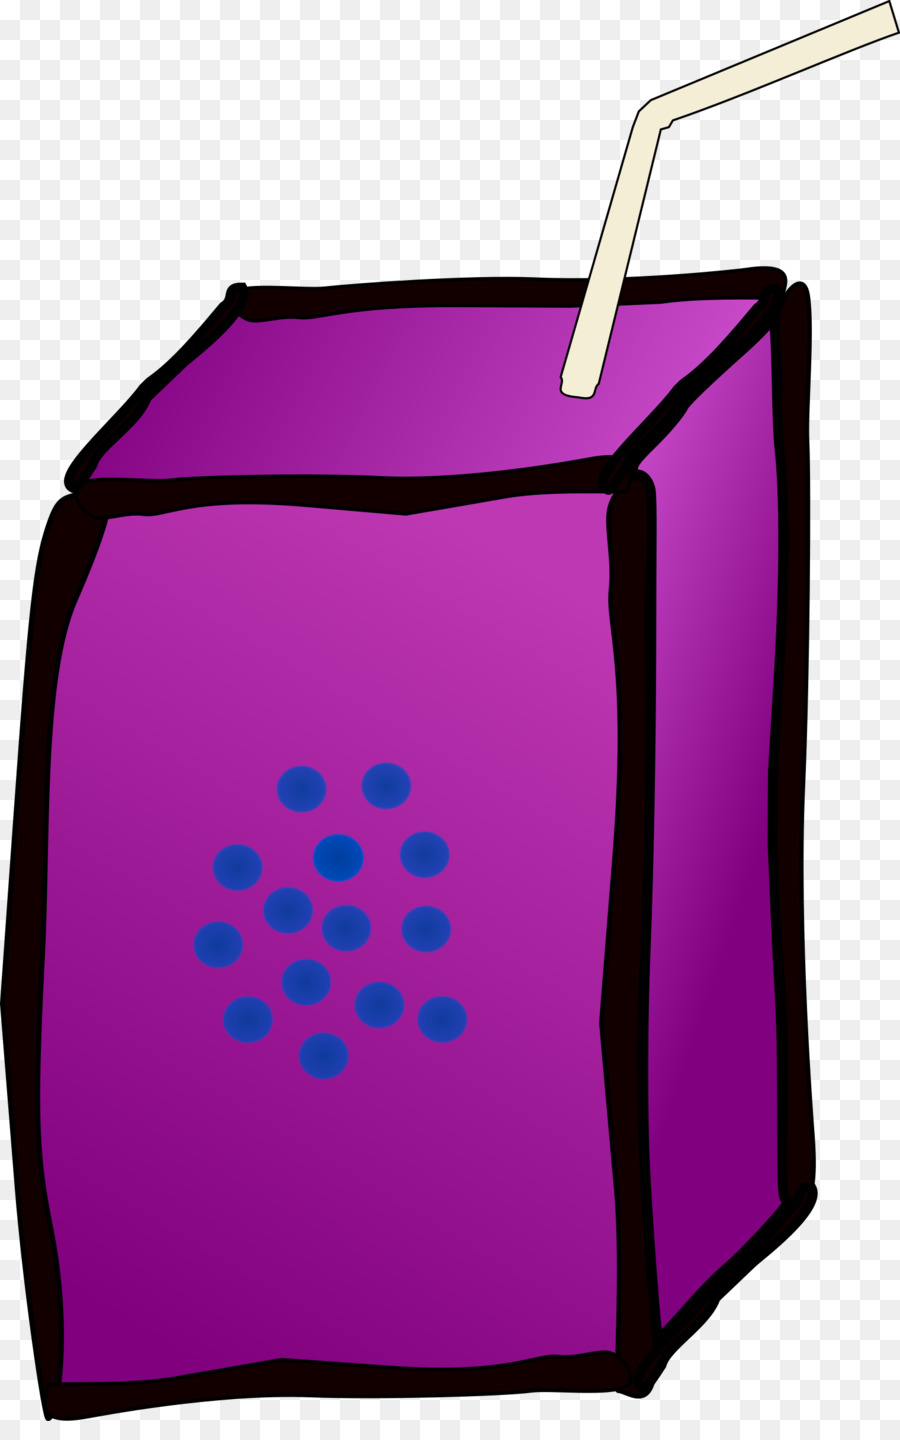 Juice clipart purple juice. Grape cartoon drink transparent